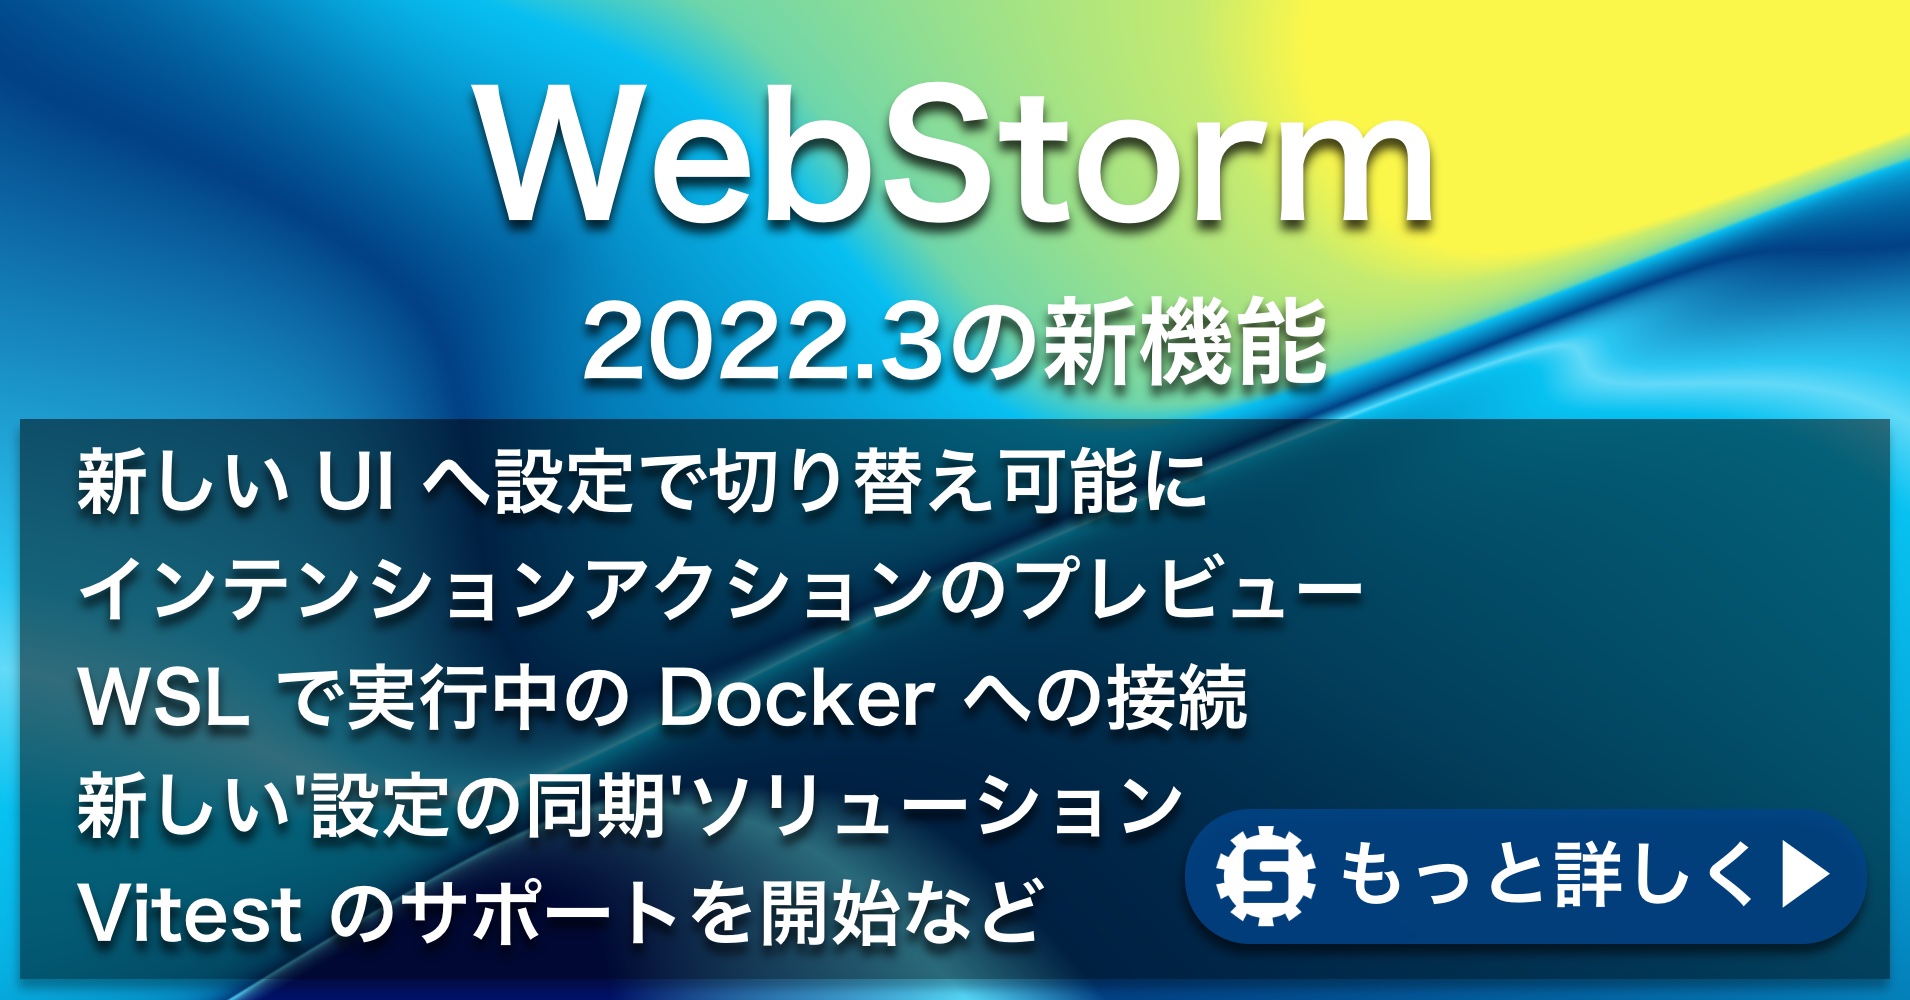 WebStorm 2022.3の新機能